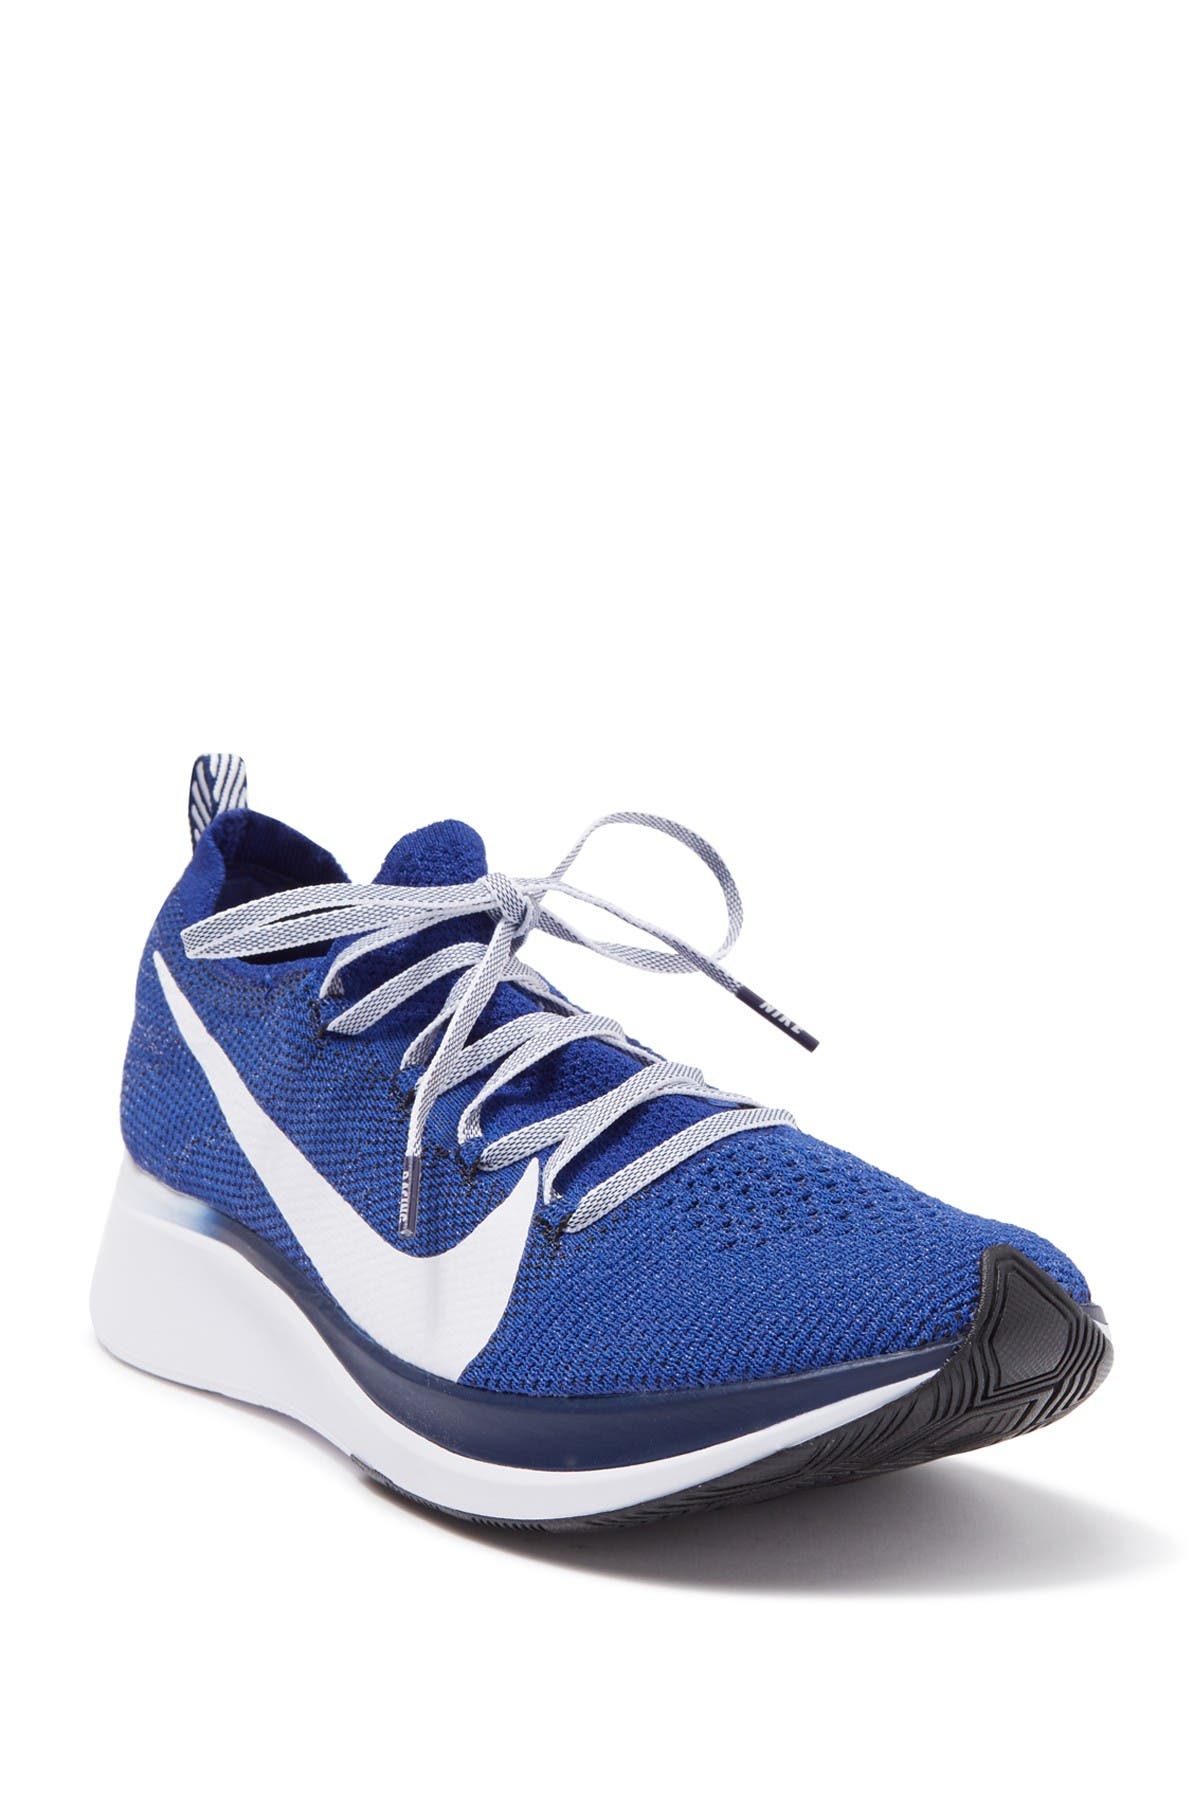 Nike | Zoom Fly Flyknit Running Shoe 